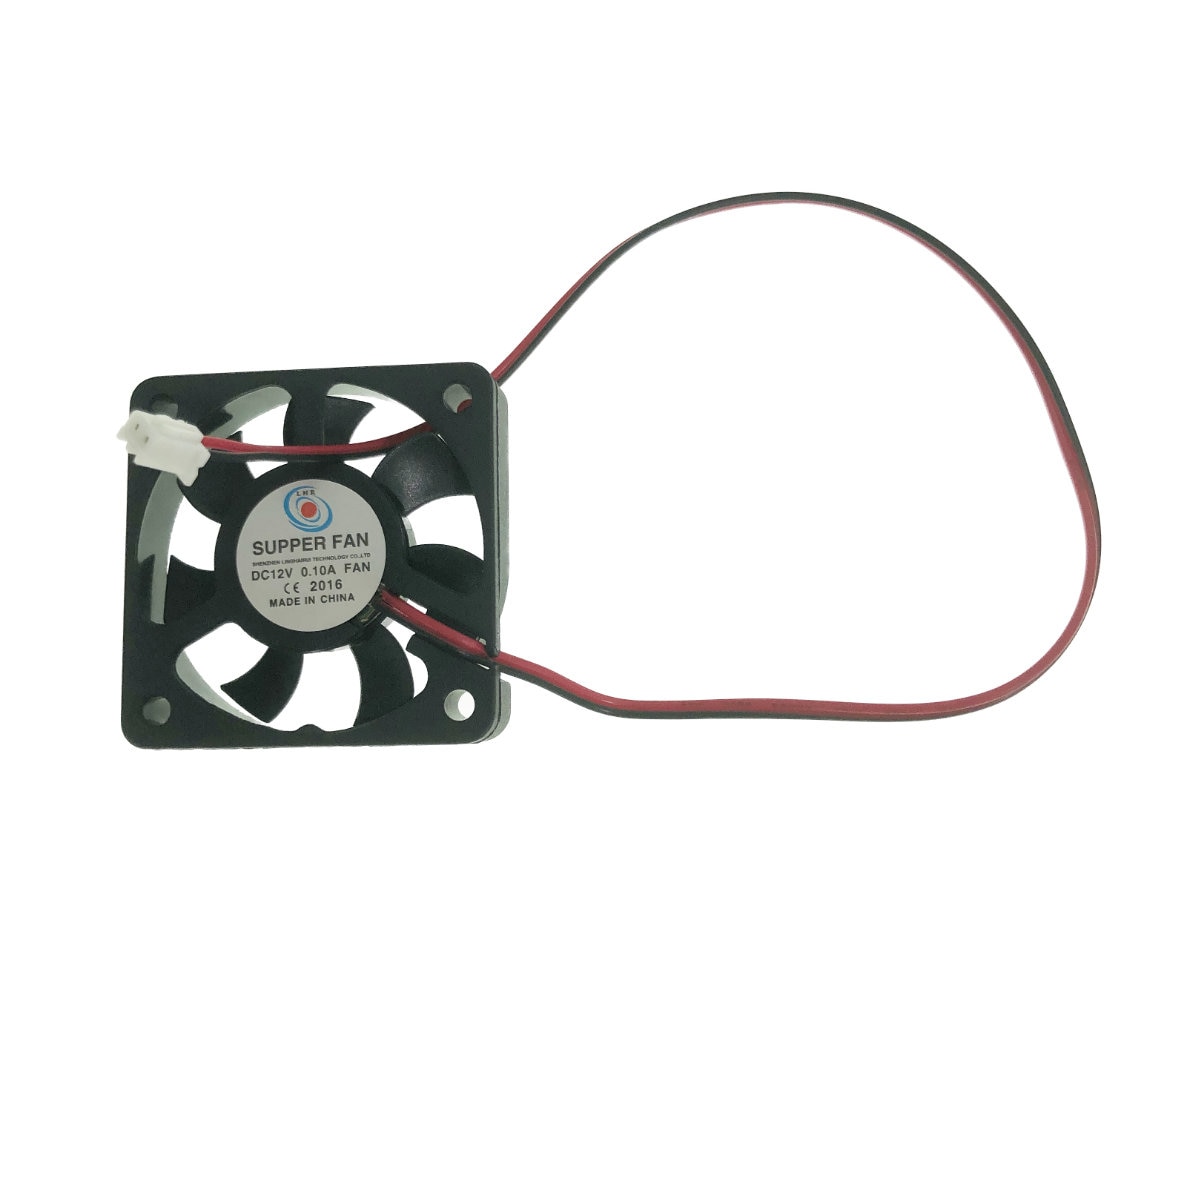 OEM LHR Super számítógép hűtő ventilátor, 2 tűs csatlakozó, 50 x 50 x 12  mm, 4500 RPM, 12v, 0,10A 